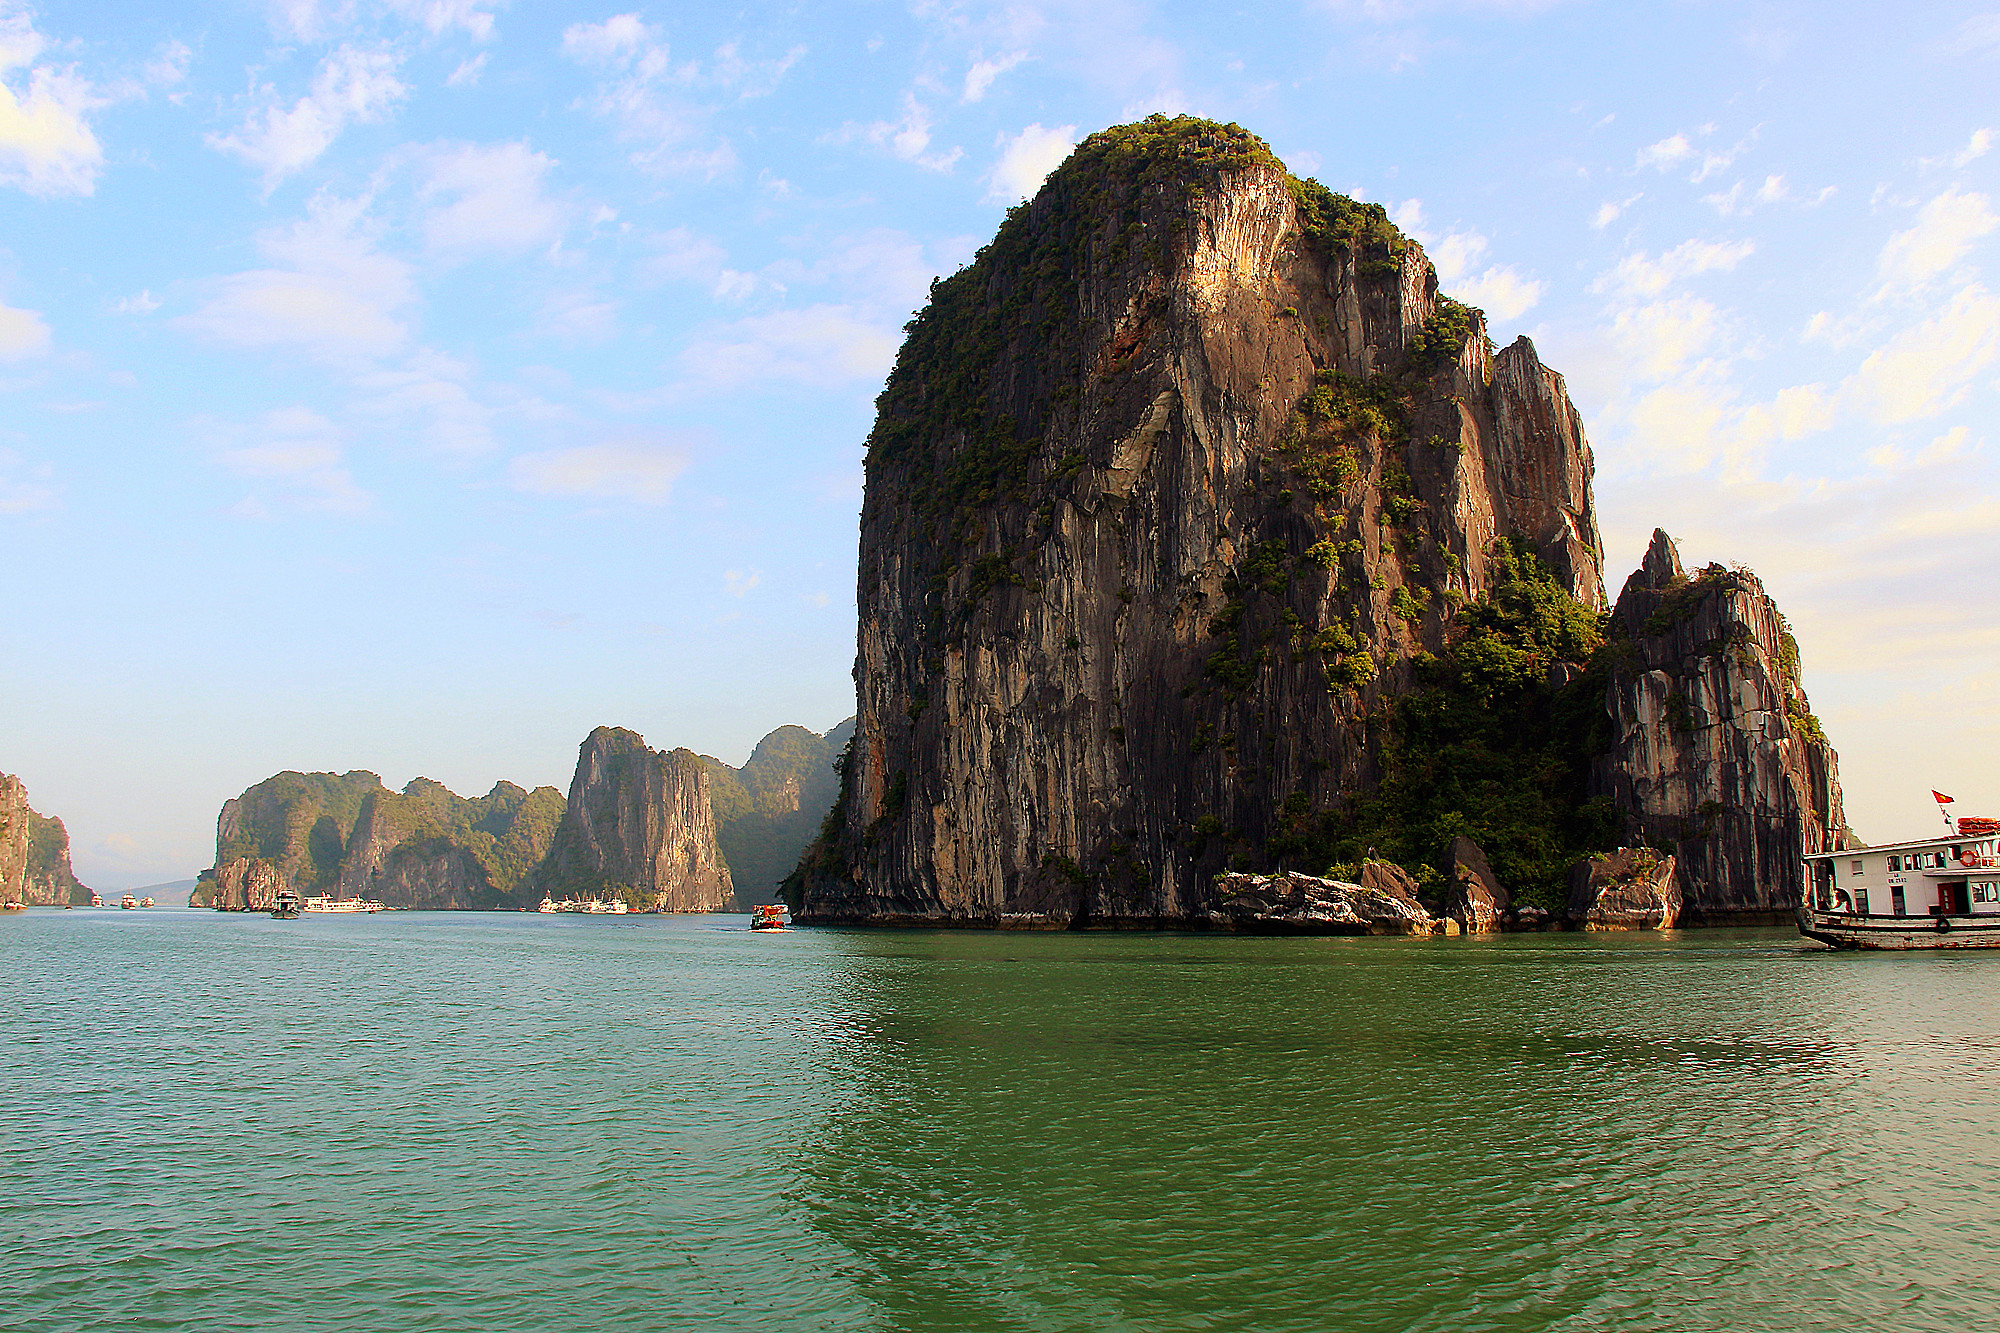 去越南旅游时,随摄了一组,越南下龙湾海上桂林的美景照.